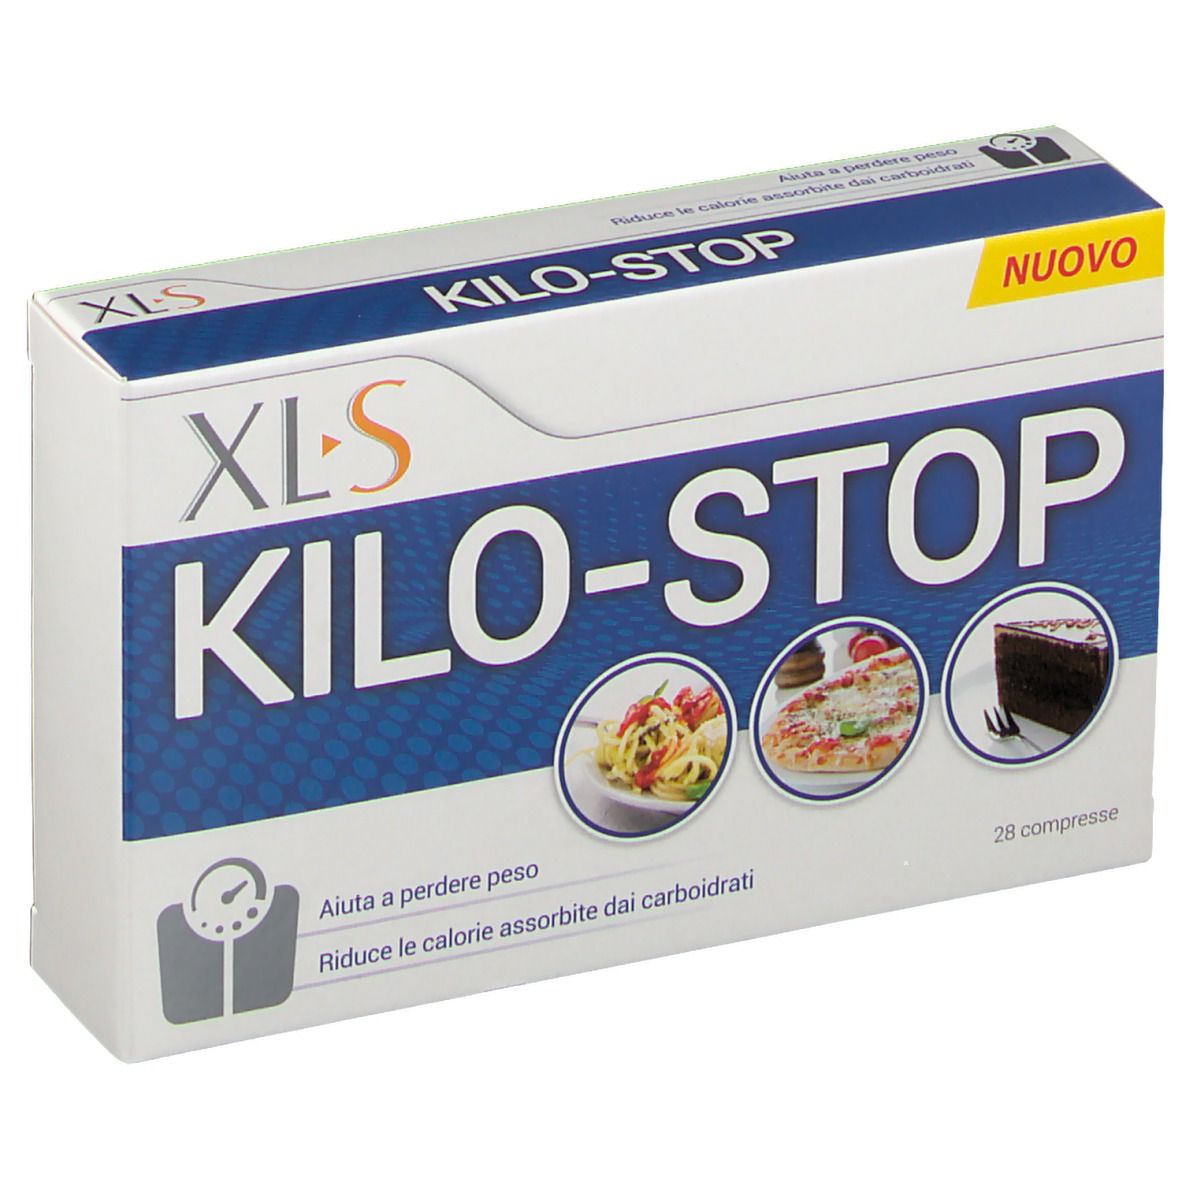 XL-S Kilo-Stop